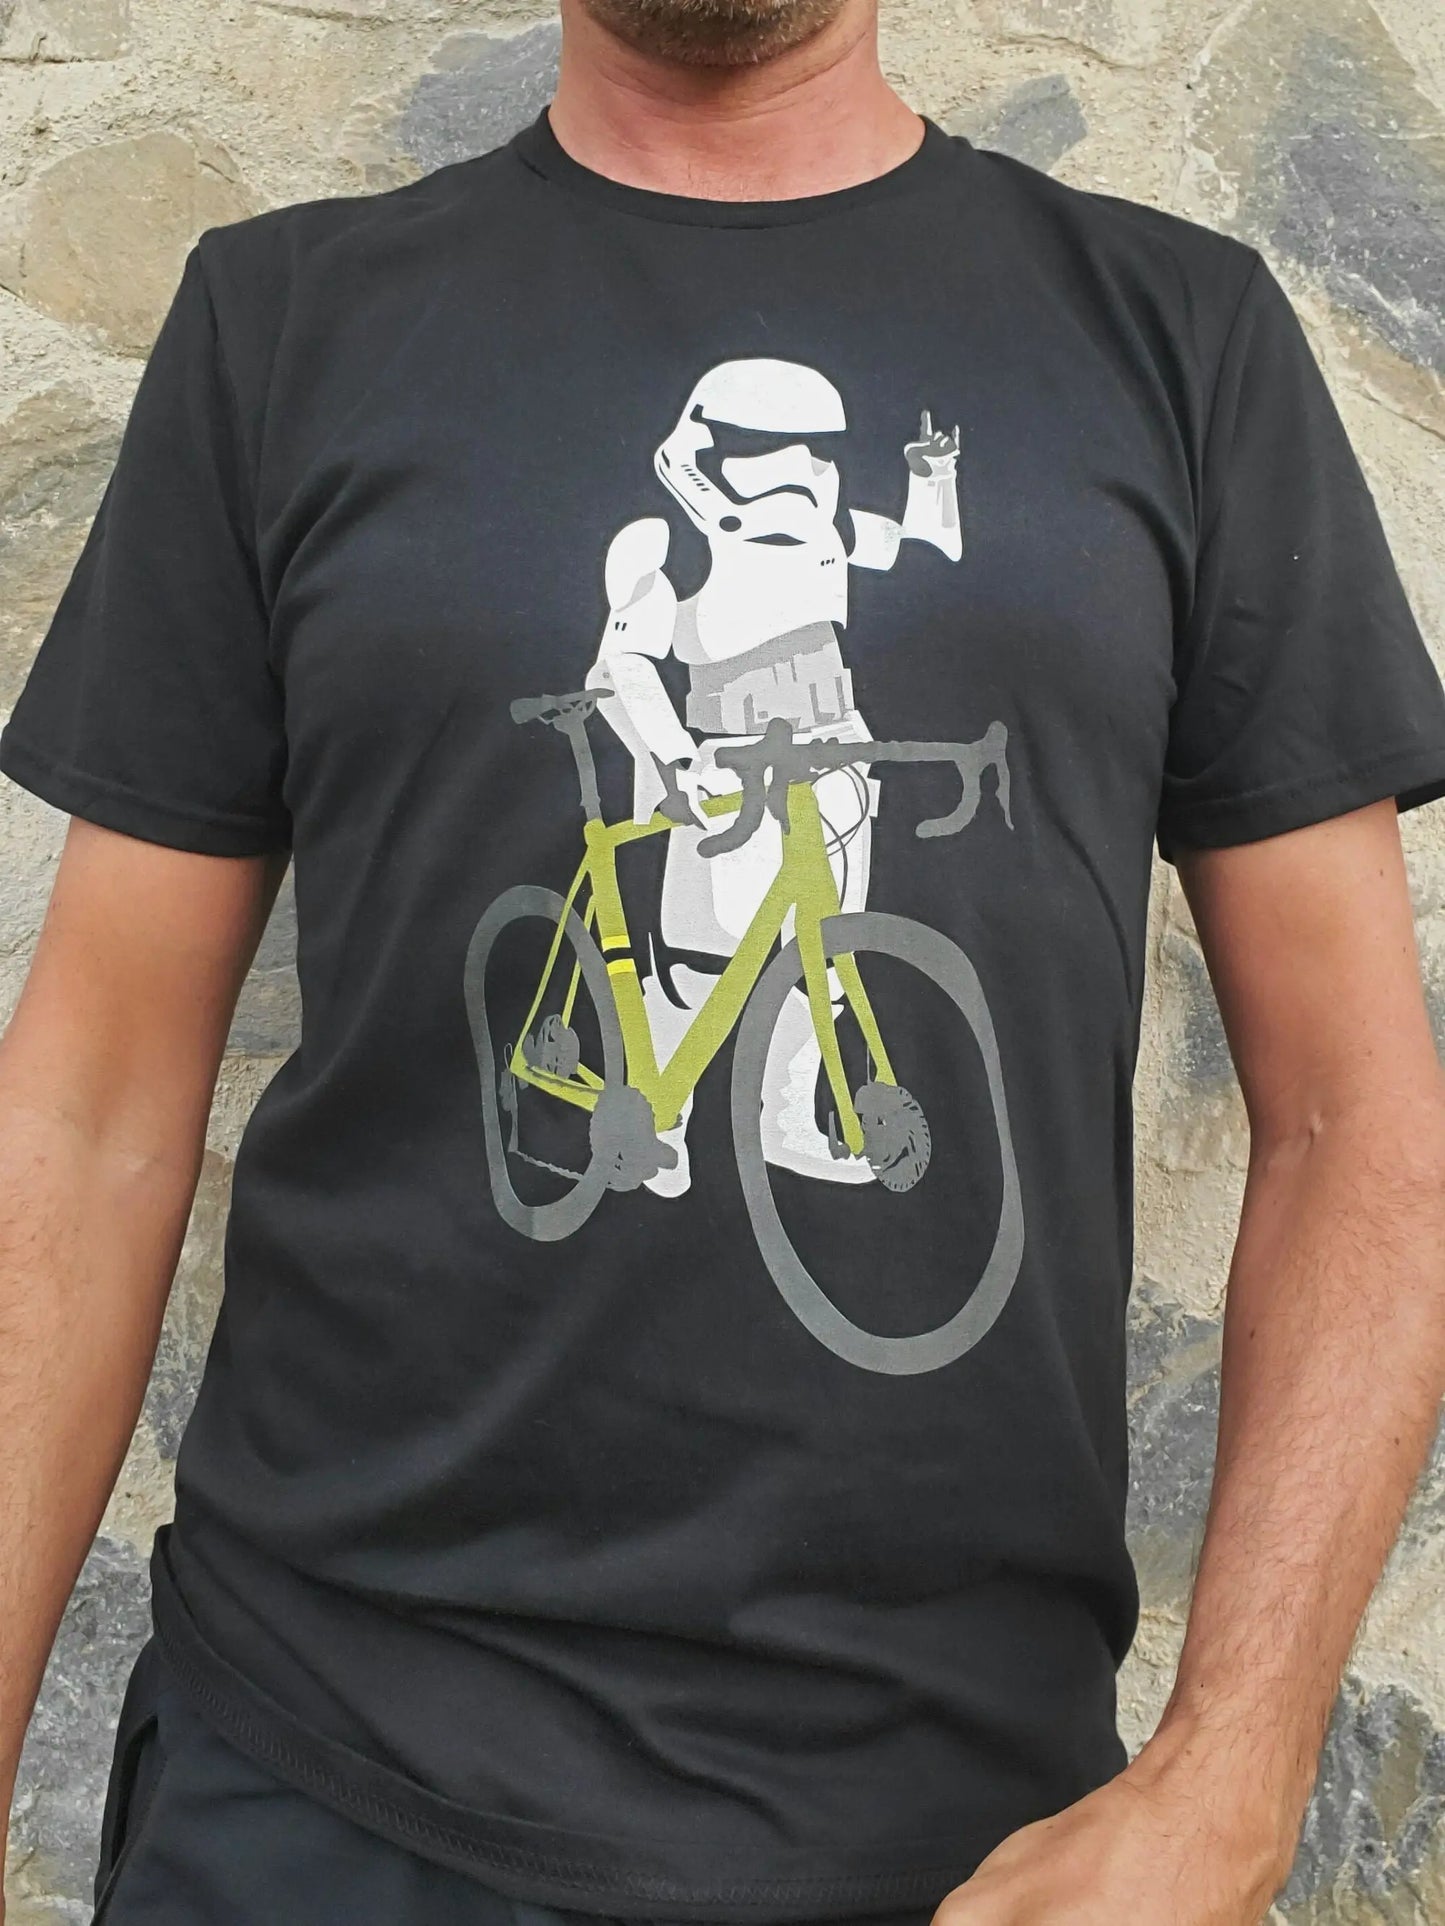 Stormtroopers Road Bike T-Shirt - Geeks'n'Gears - bicycle bike biking